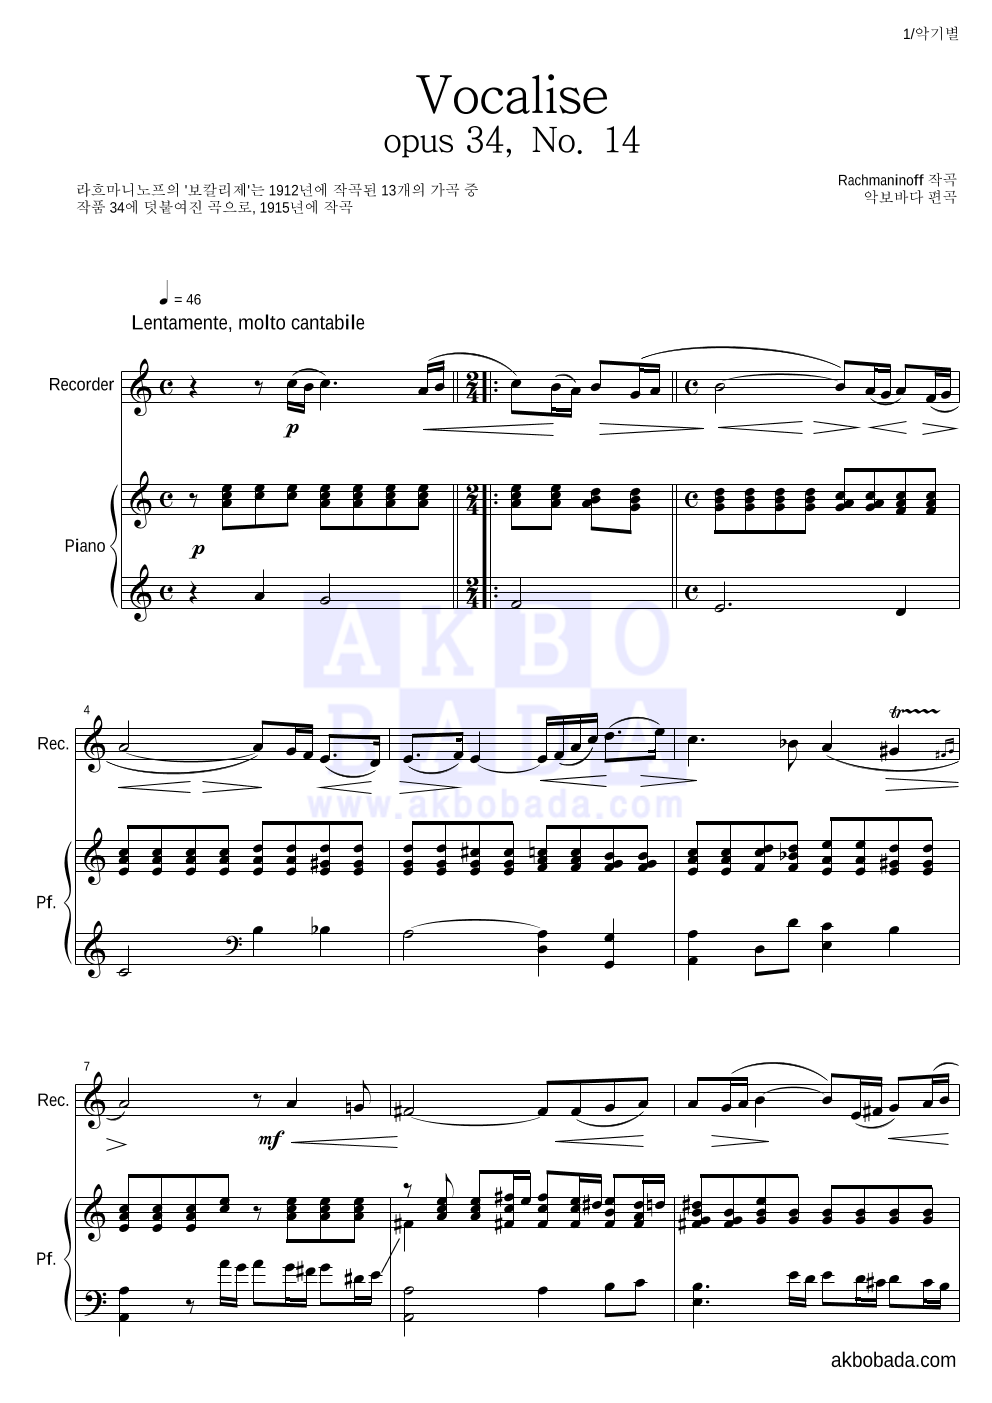 라흐마니노프 - 보칼리제(Vocalise) 리코더&피아노 악보 